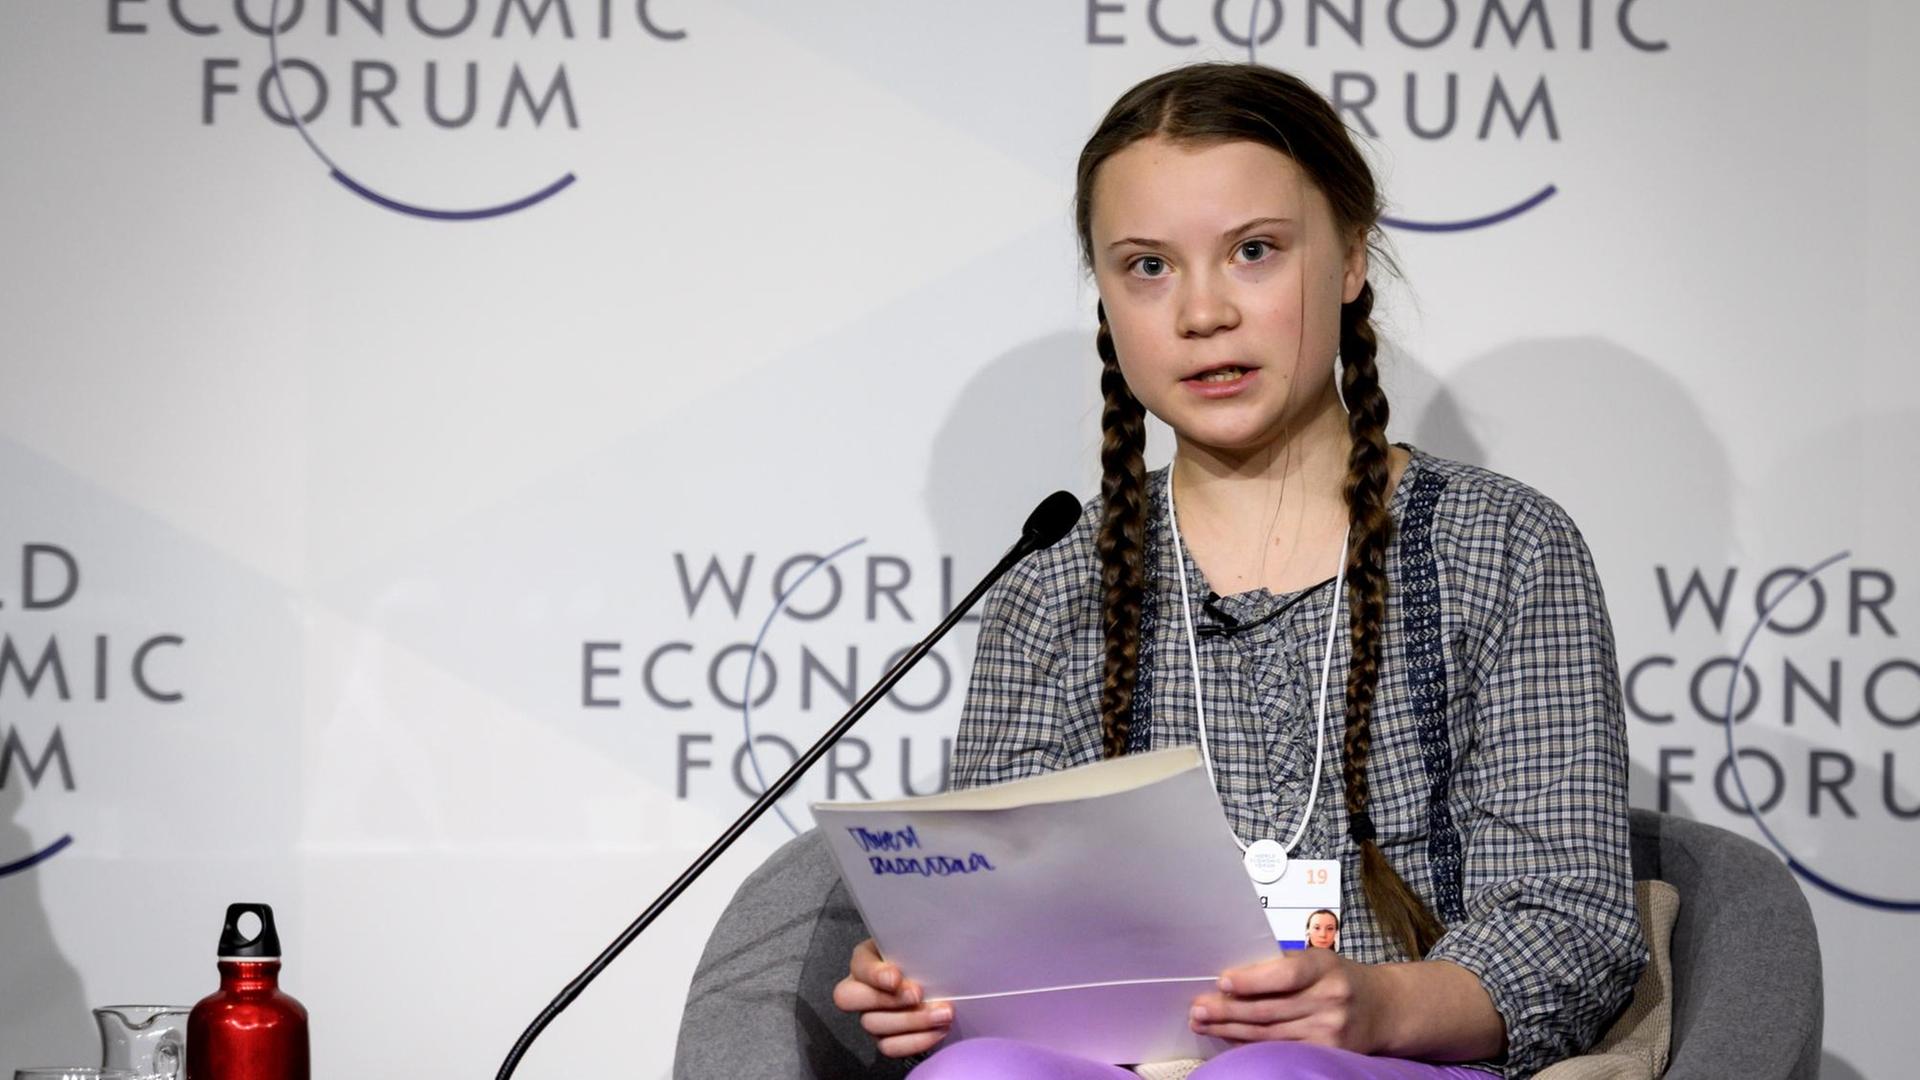 Die schwedische Klimaaktivistin Greta Thunberg hält am 25.01.2019 auf dem Weltwirtschaftsforum in Davos eine Rede